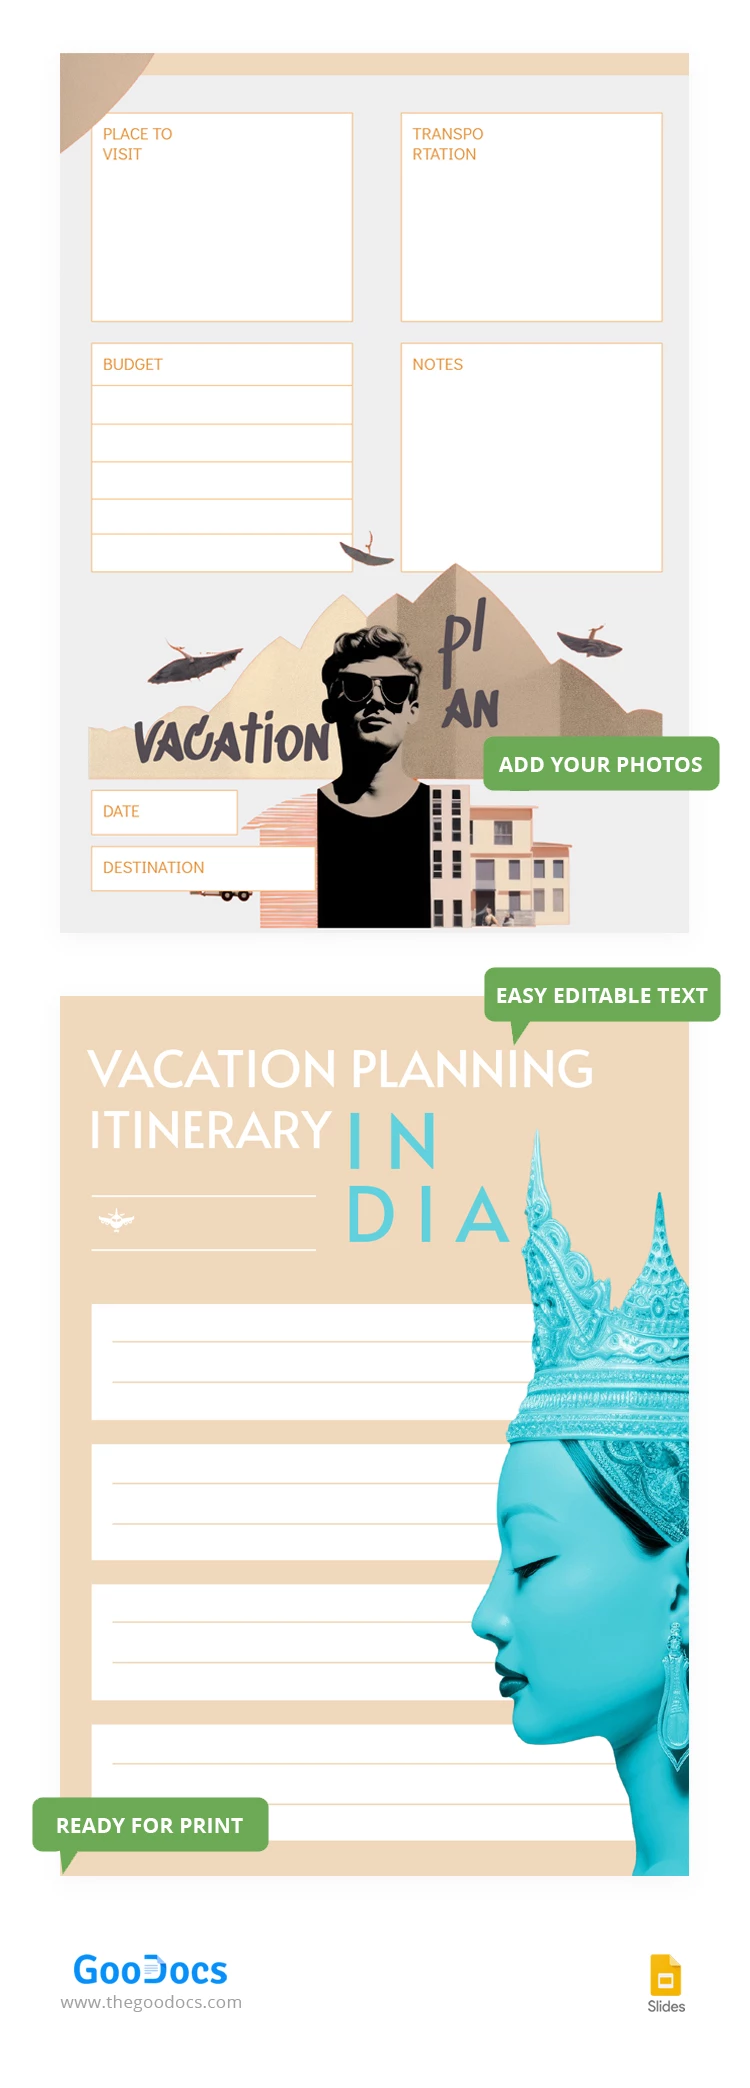 Planification des vacances Itinéraire - free Google Docs Template - 10068594